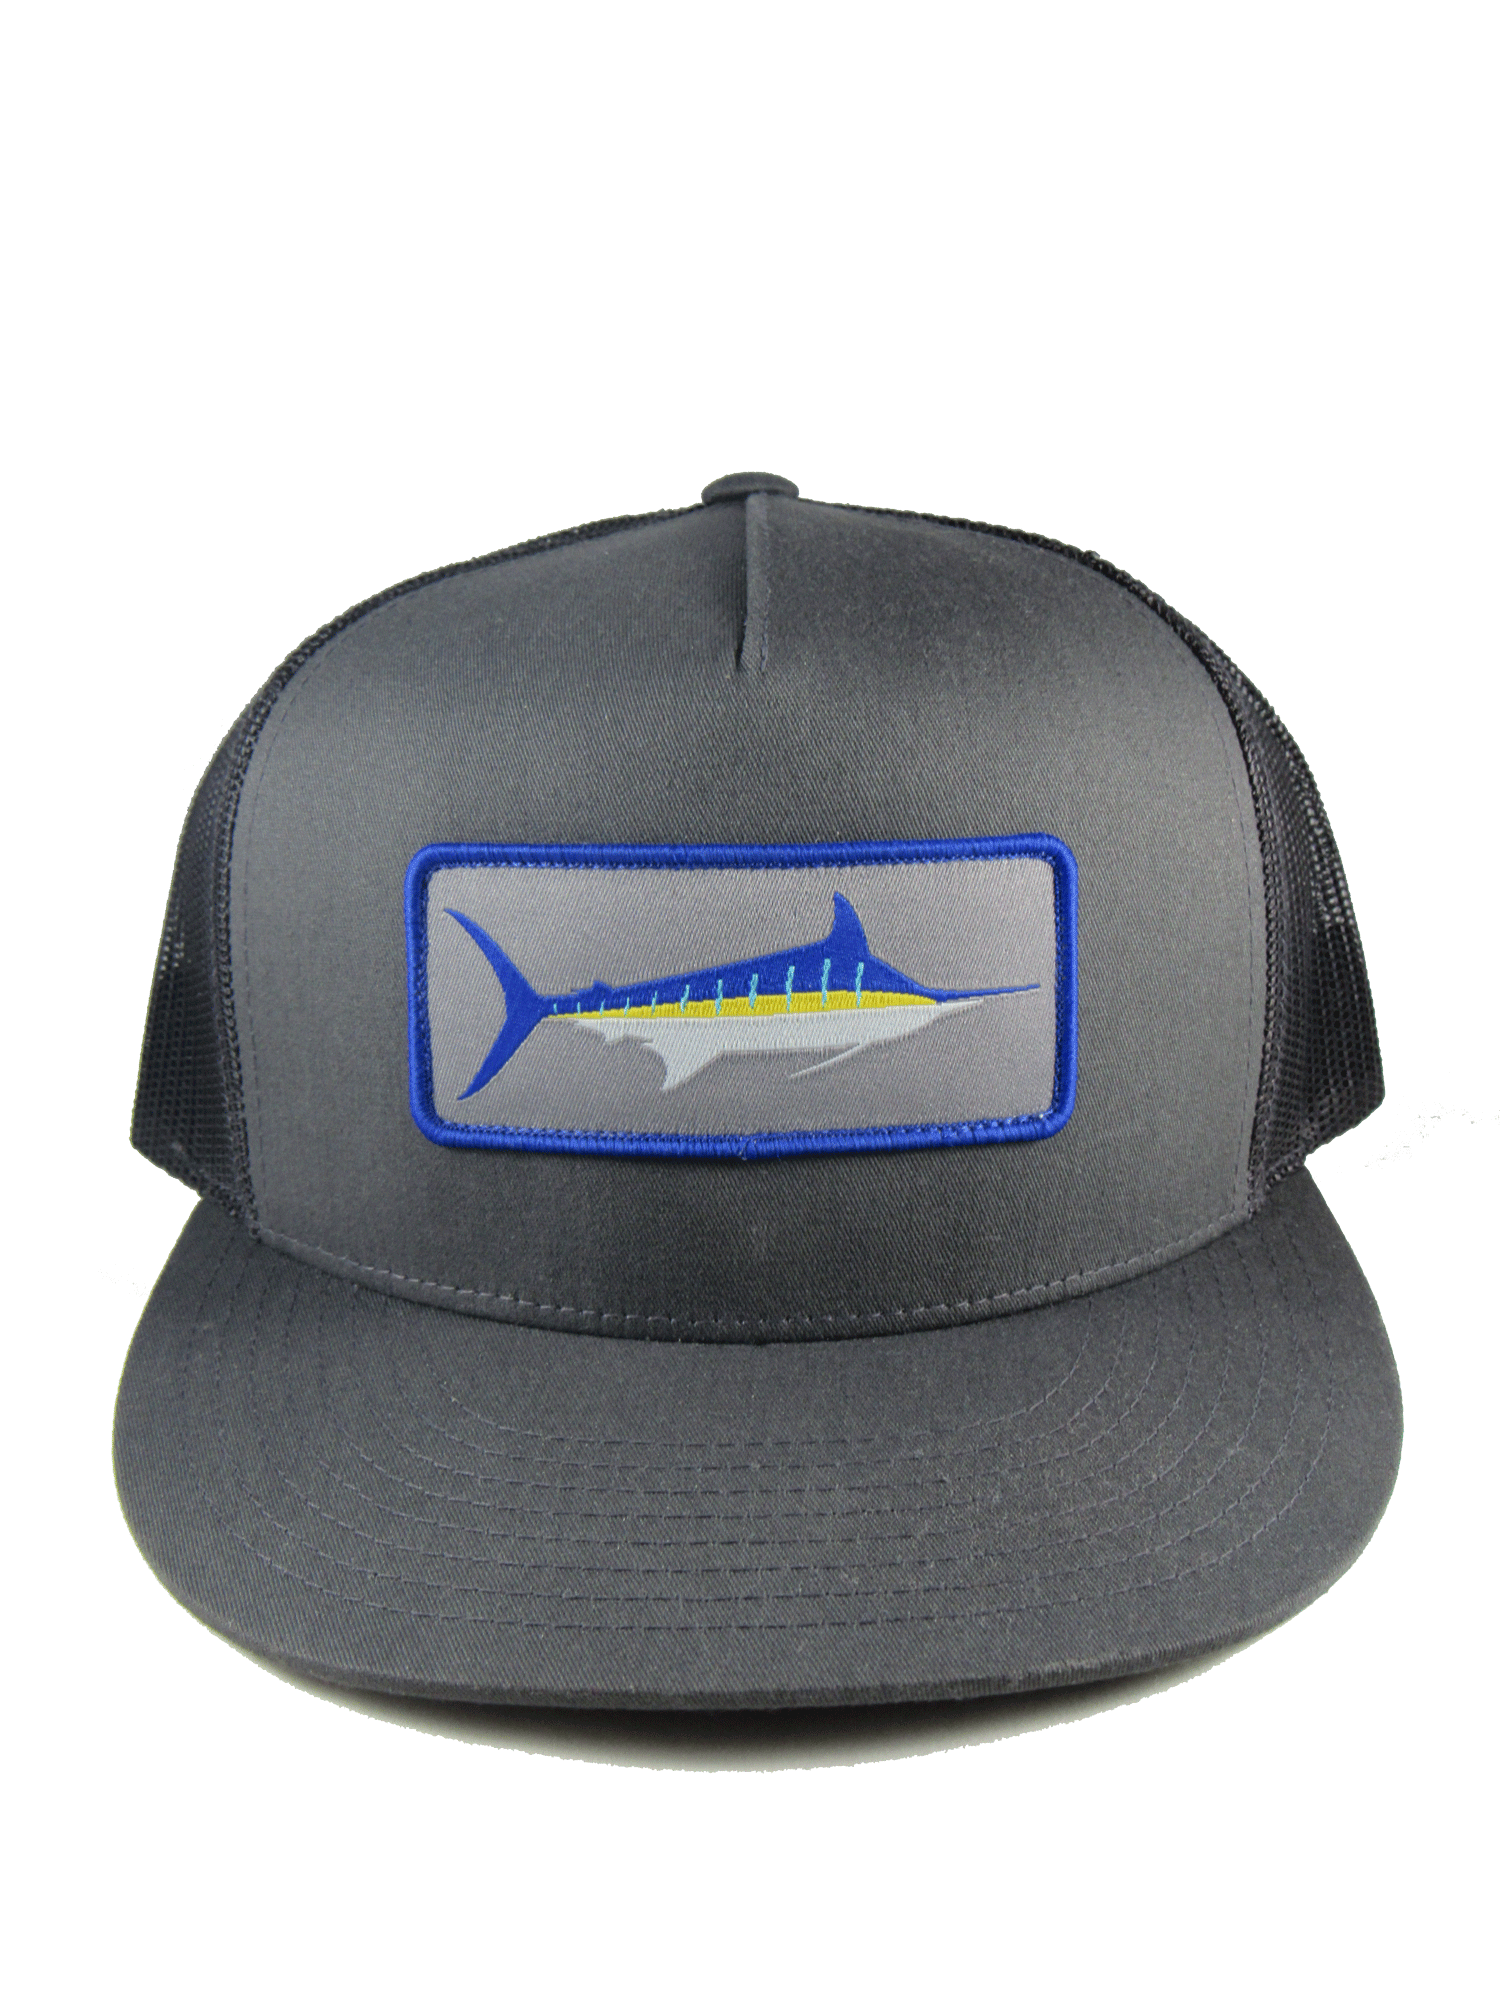 https://fintipfishing.com/cdn/shop/products/Marlin-Stripe-Hat-1_1500x.png?v=1618955855